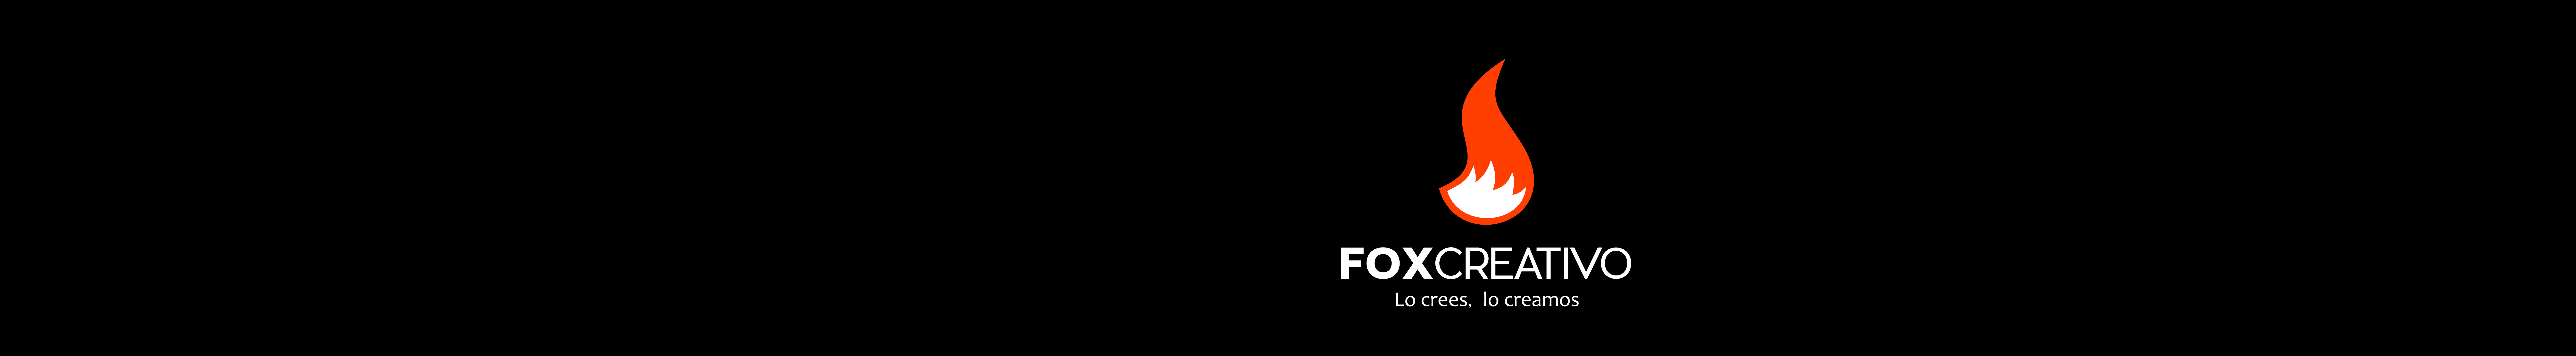 Fox Creativo's profile banner